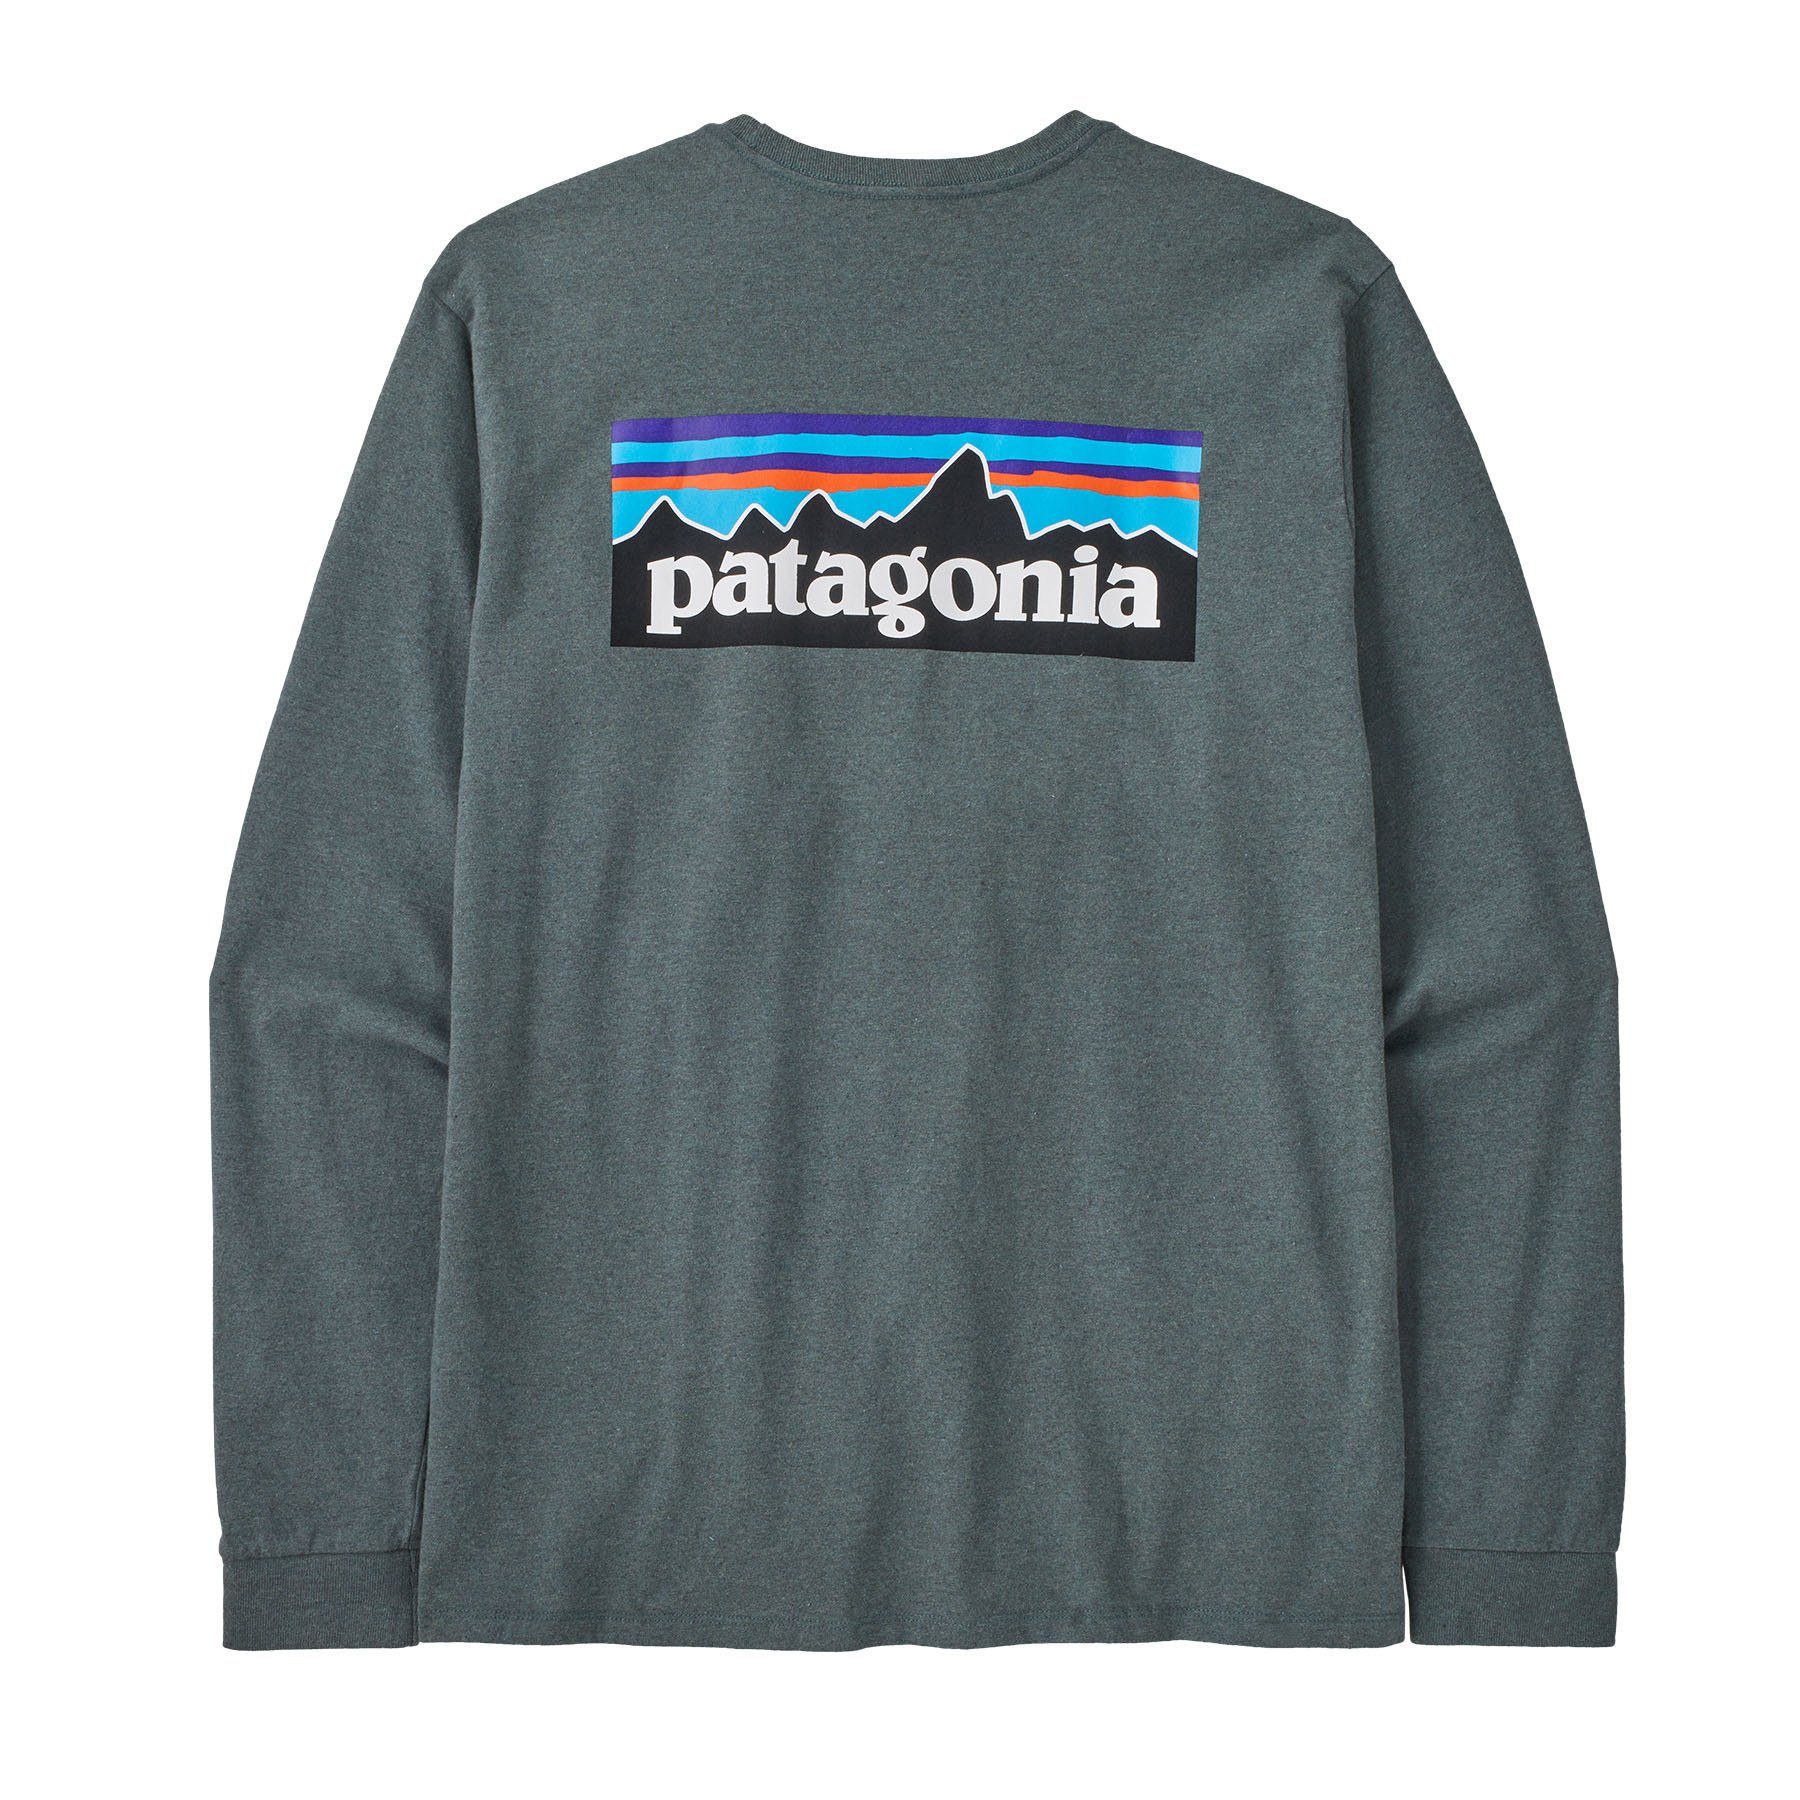 L/S Langarmshirt Patagonia Langarmshirt Logo Responsibili-Tee green Herren Patagonia nouveau P-6 Adult